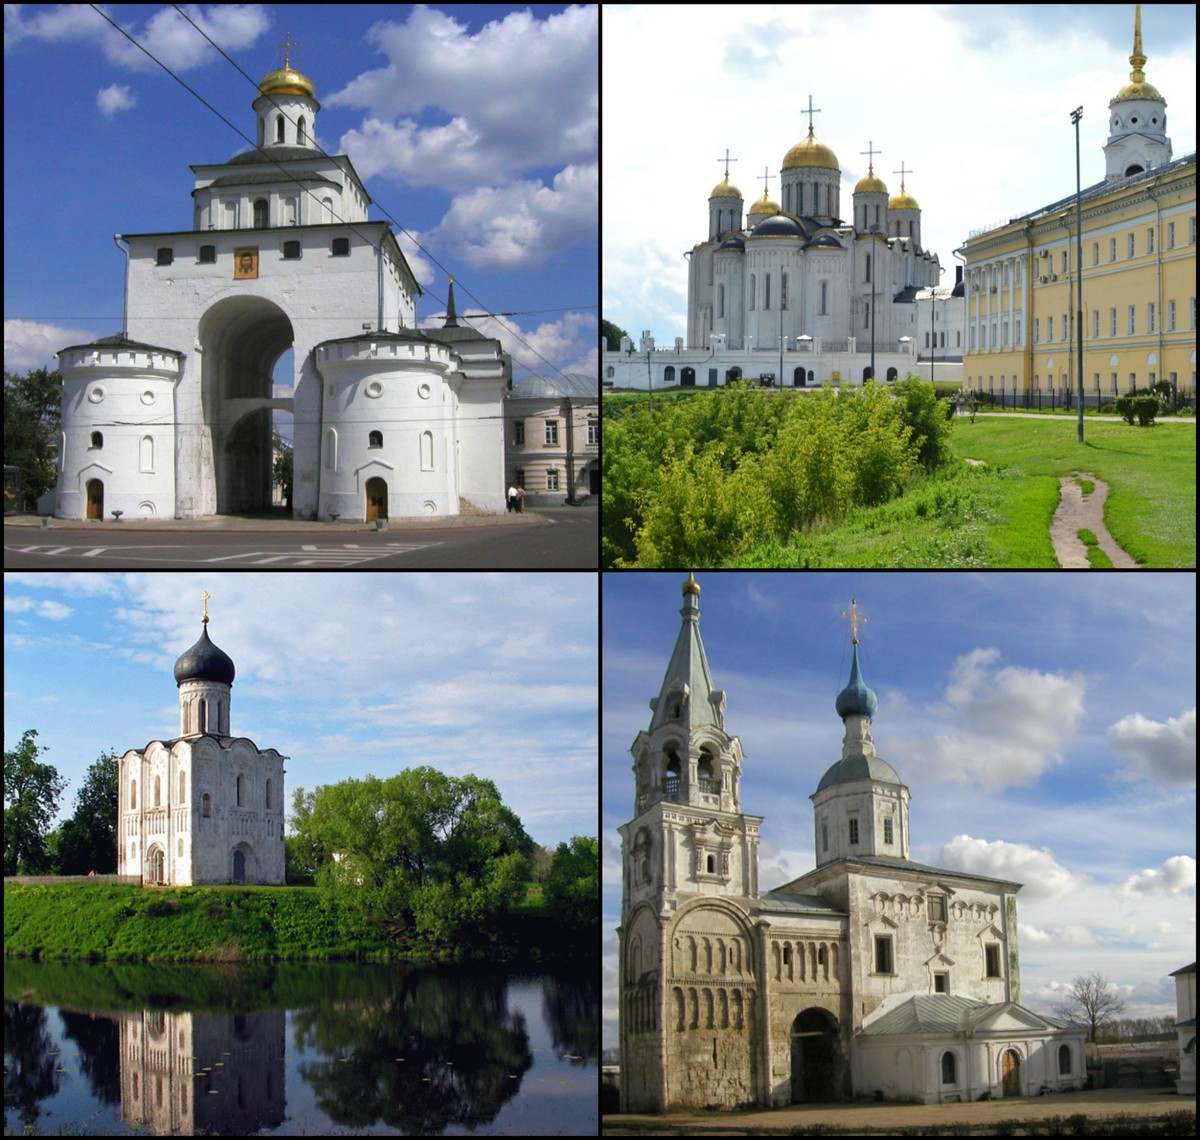 В 12 веке происходит крутой поворот в истории Руси. Новым центром становится город Владимир. Как это произошло? Давайте разберемся!